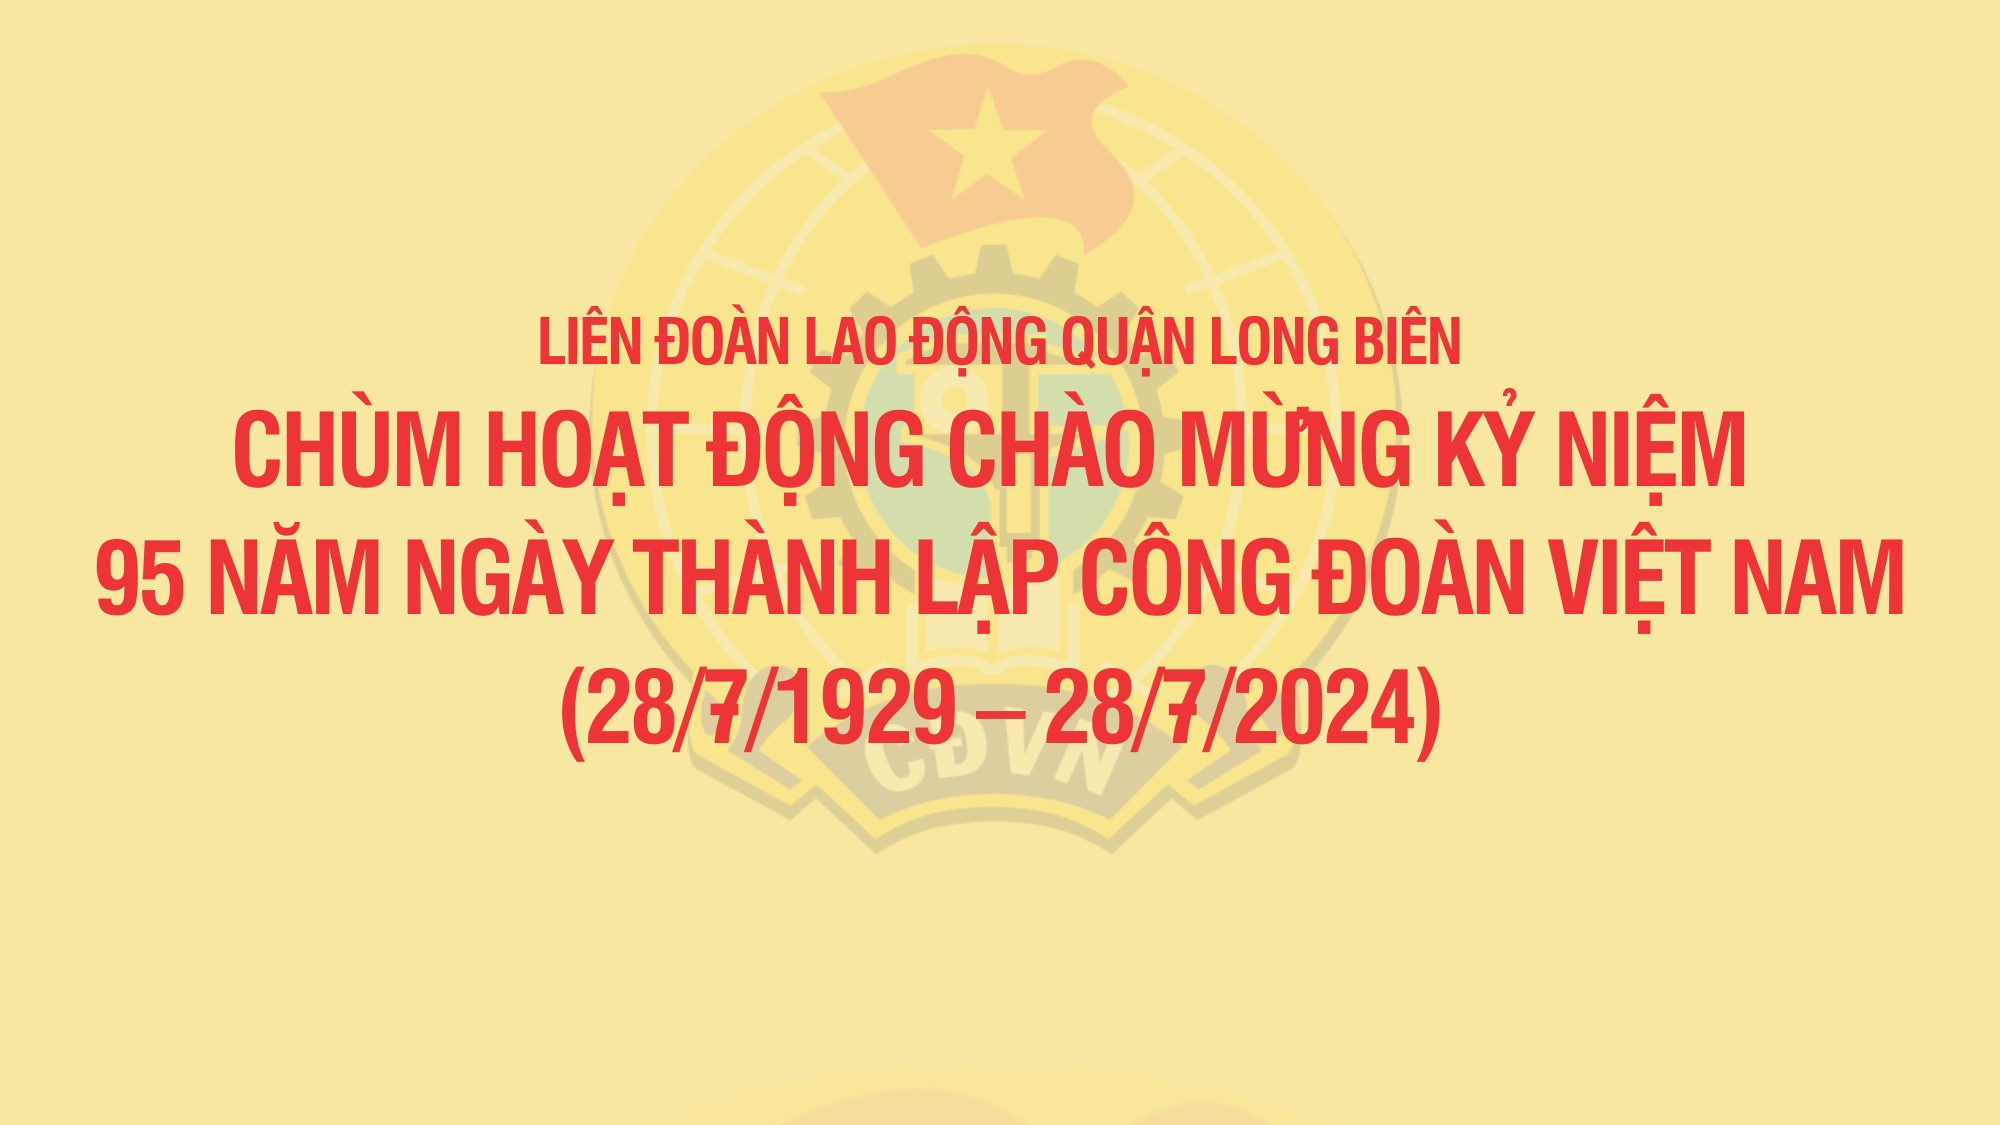 LĐLĐ quận Long Biên: 12 hoạt động chào mừng kỷ niệm 95 năm Ngày thành lập Công đoàn Việt Nam